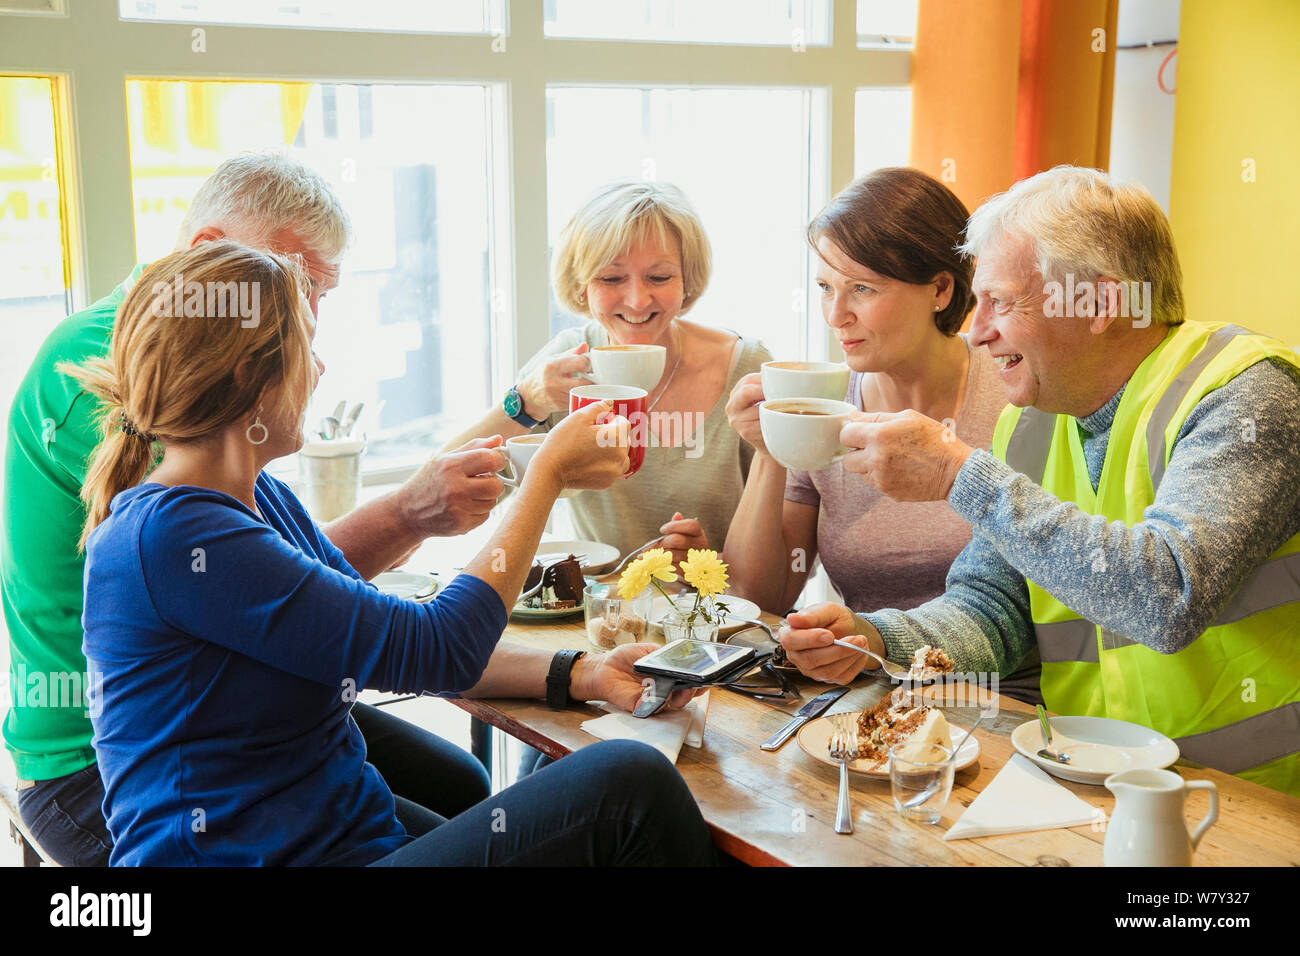 Eine Gruppe von fünf Personen, die eine Pause von der Stadt Reinigung und mit Kaffee und Kuchen. Stockfoto